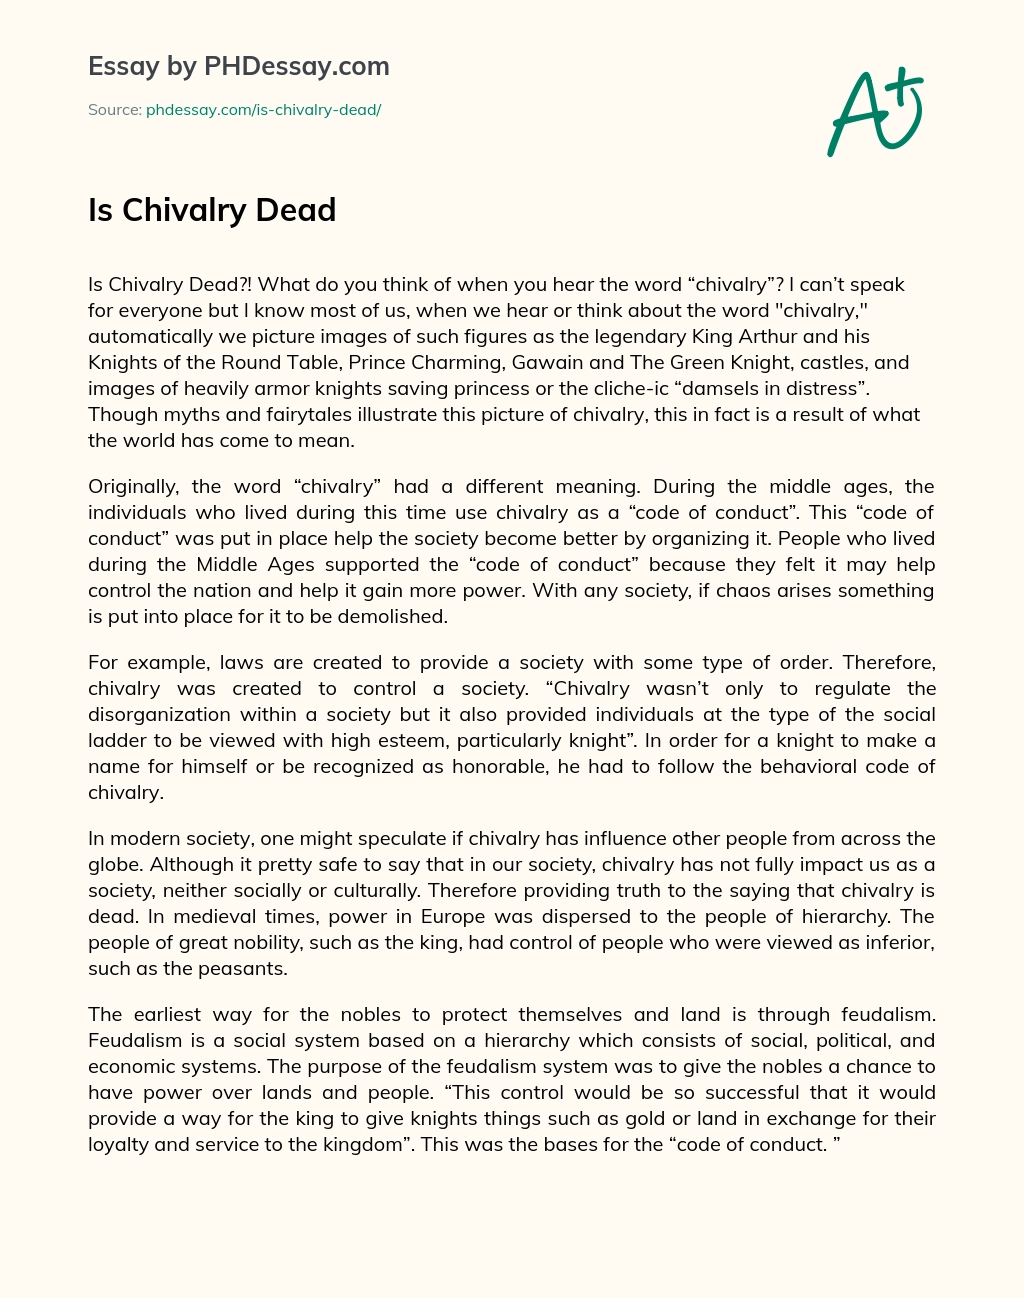 Is Chivalry Dead essay